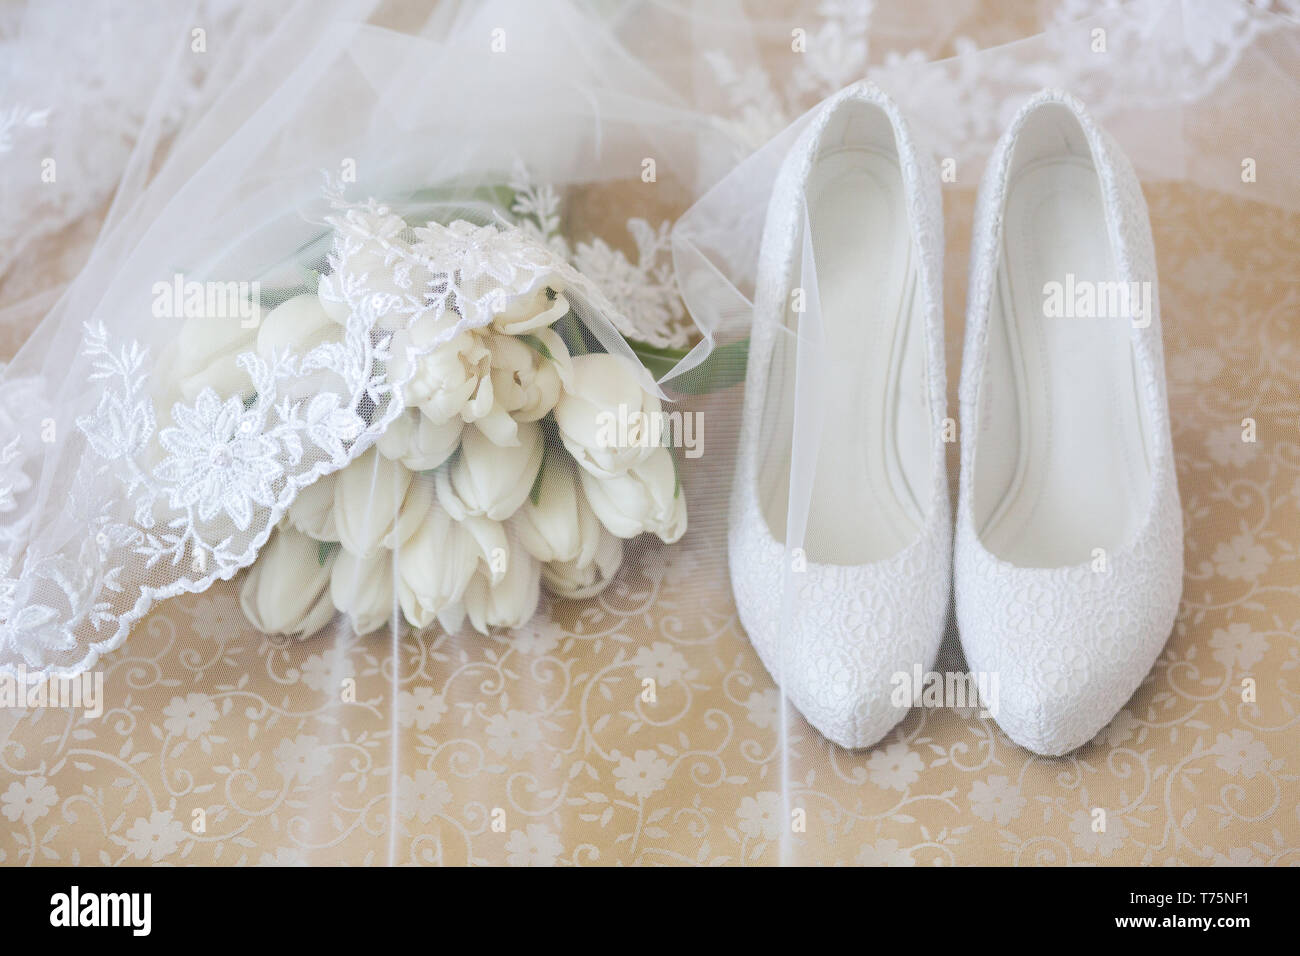 Mariage bouquet de tulipes blanches recouverte d'un voile à côté de la mariée chaussures haut talon Banque D'Images